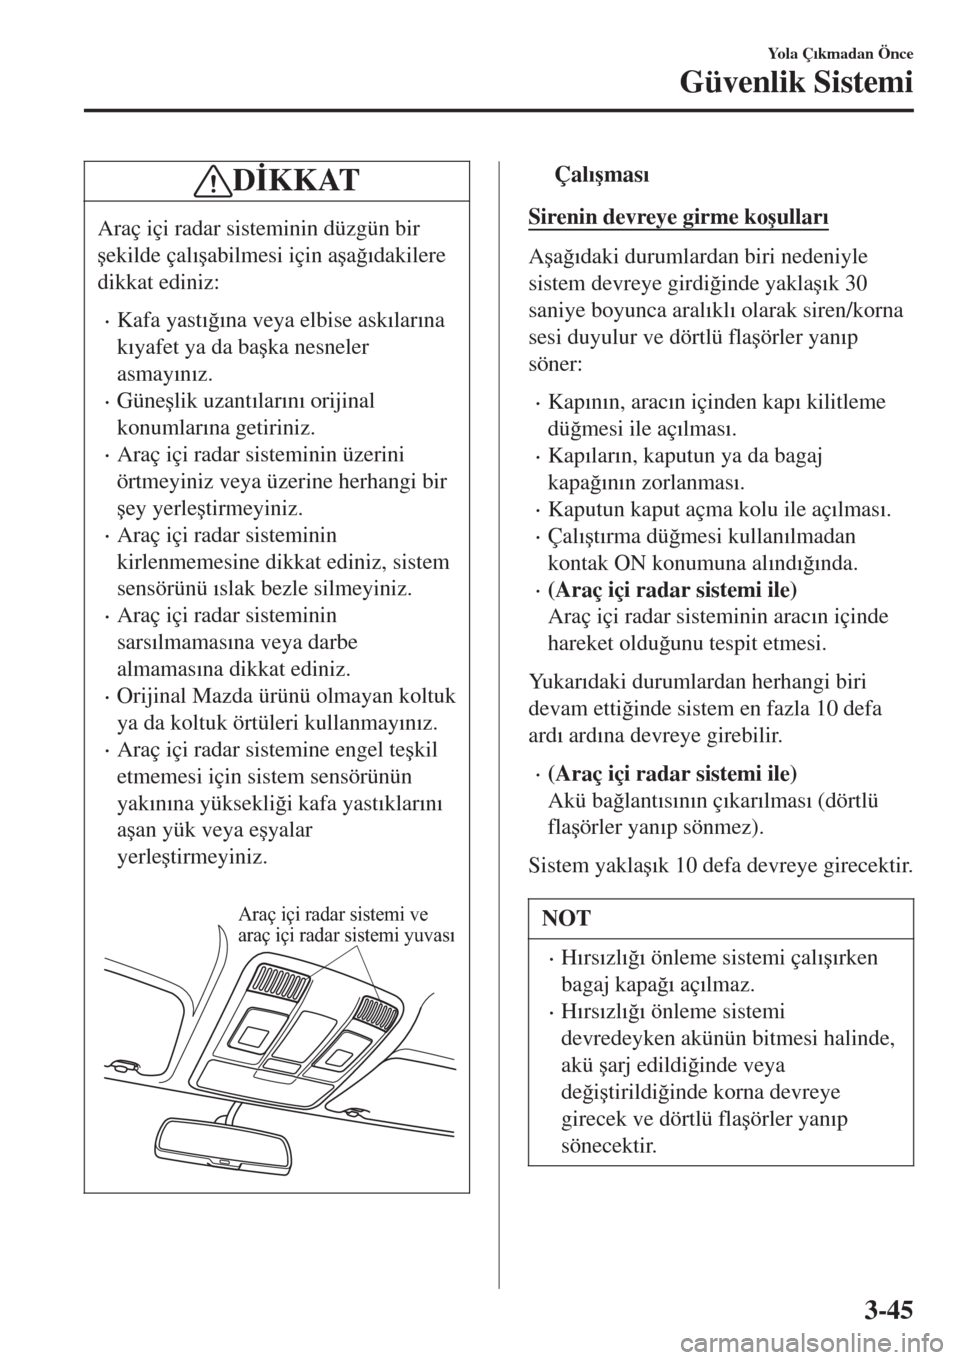 MAZDA MODEL CX-3 2015  Kullanım Kılavuzu (in Turkish) D�øKKAT
Araç içi radar sisteminin düzgün bir
�úekilde çal�Õ�úabilmesi için a�úa�÷�Õdakilere
dikkat ediniz:
•Kafa yast�Õ�÷�Õna veya elbise ask�Õlar�Õna
k�Õyafet ya da ba�úka nesne